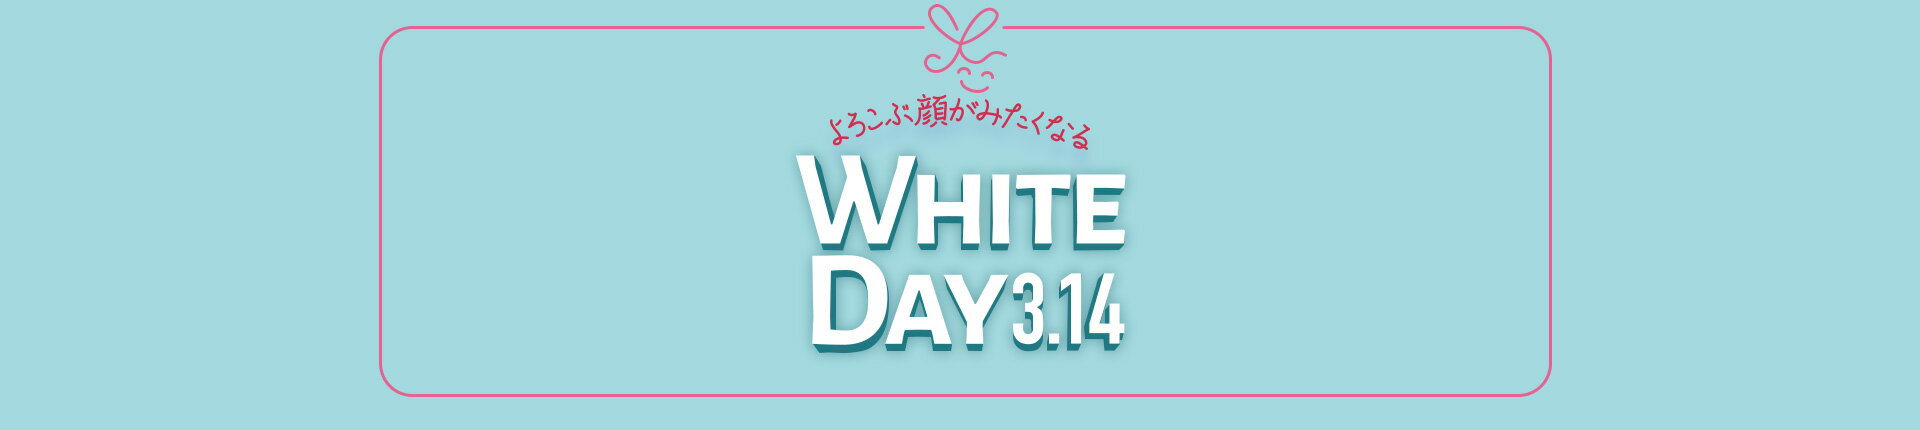 ホワイトデー特集2023 よろこぶ顔がみたくなる WHITE DAY 3.14